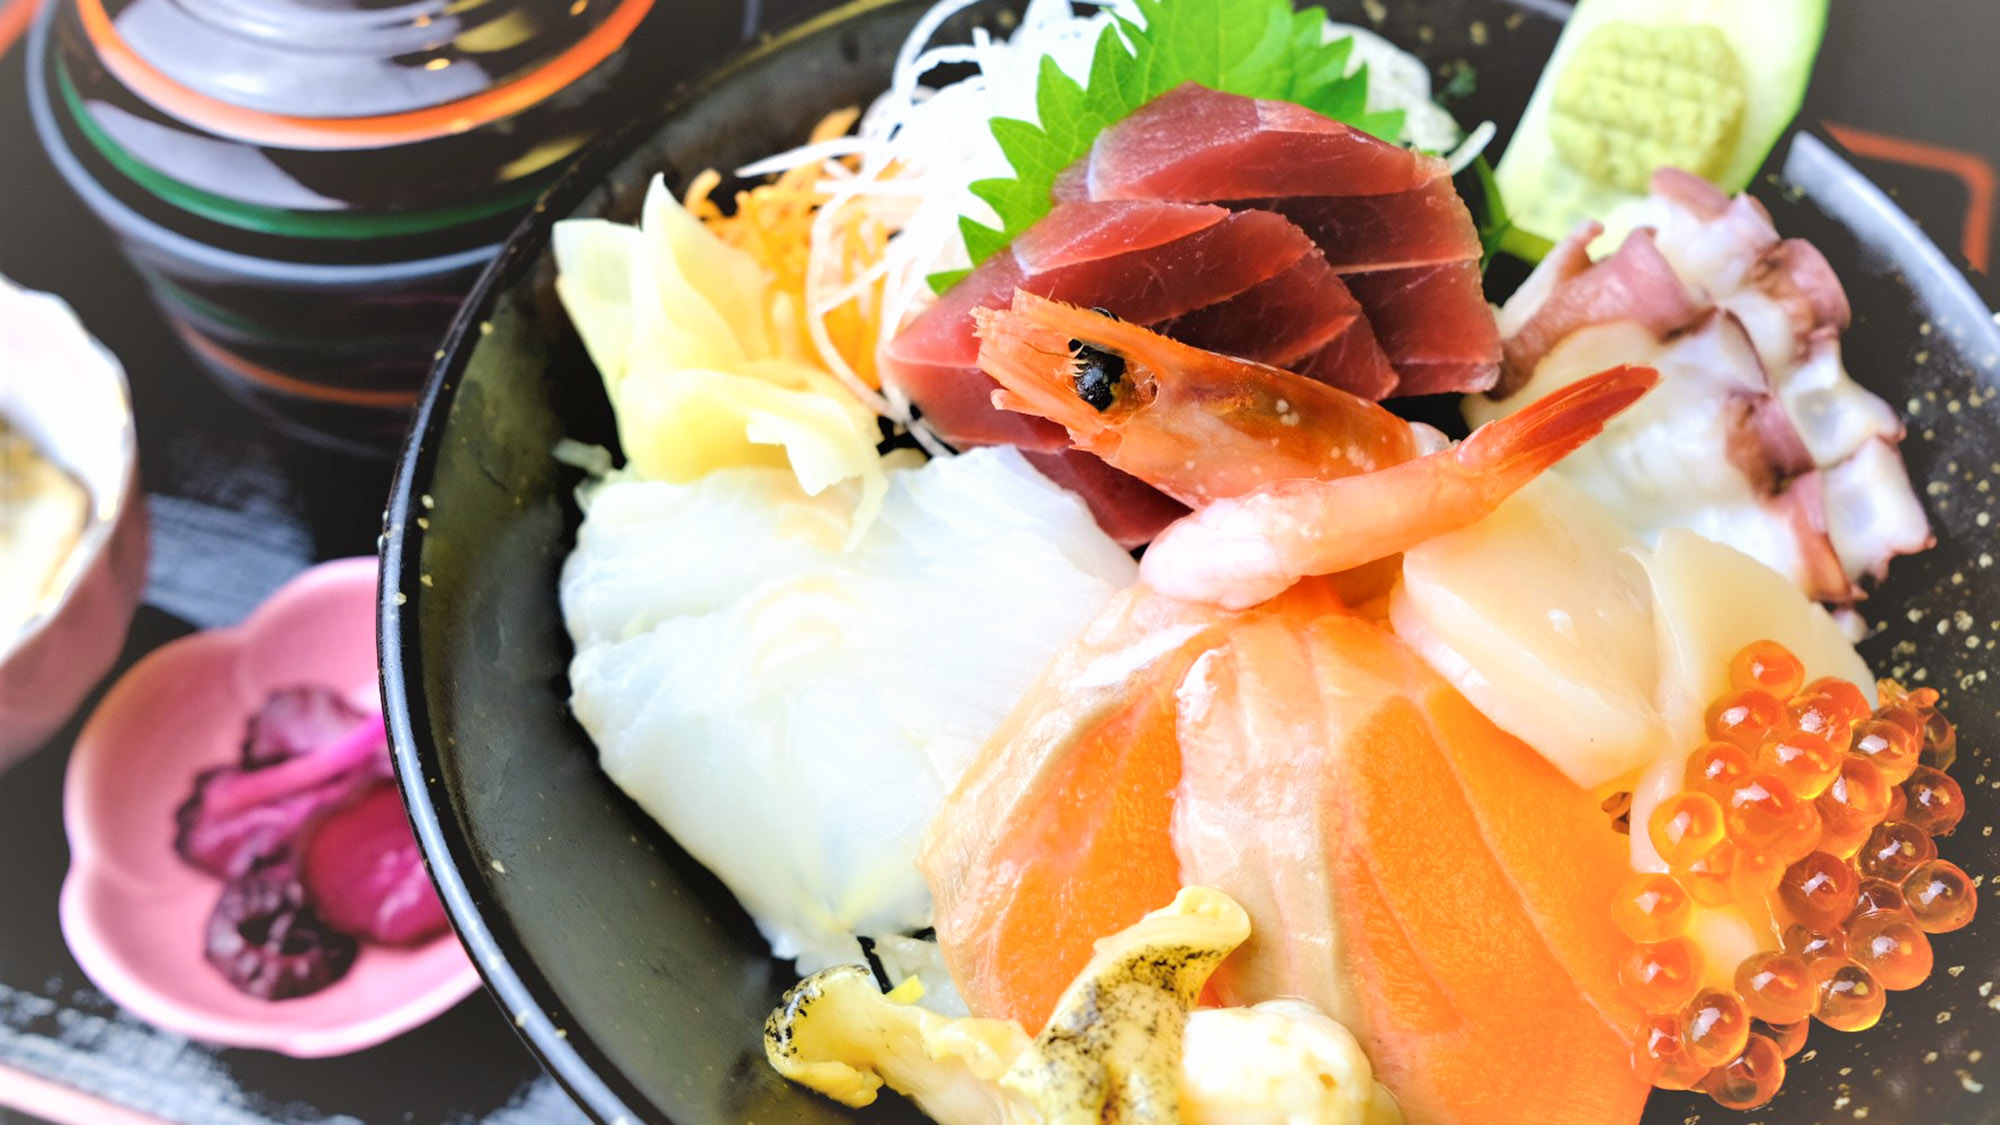 ・【海鮮丼】新鮮な魚介類がご飯の上にところ狭しとのせられています